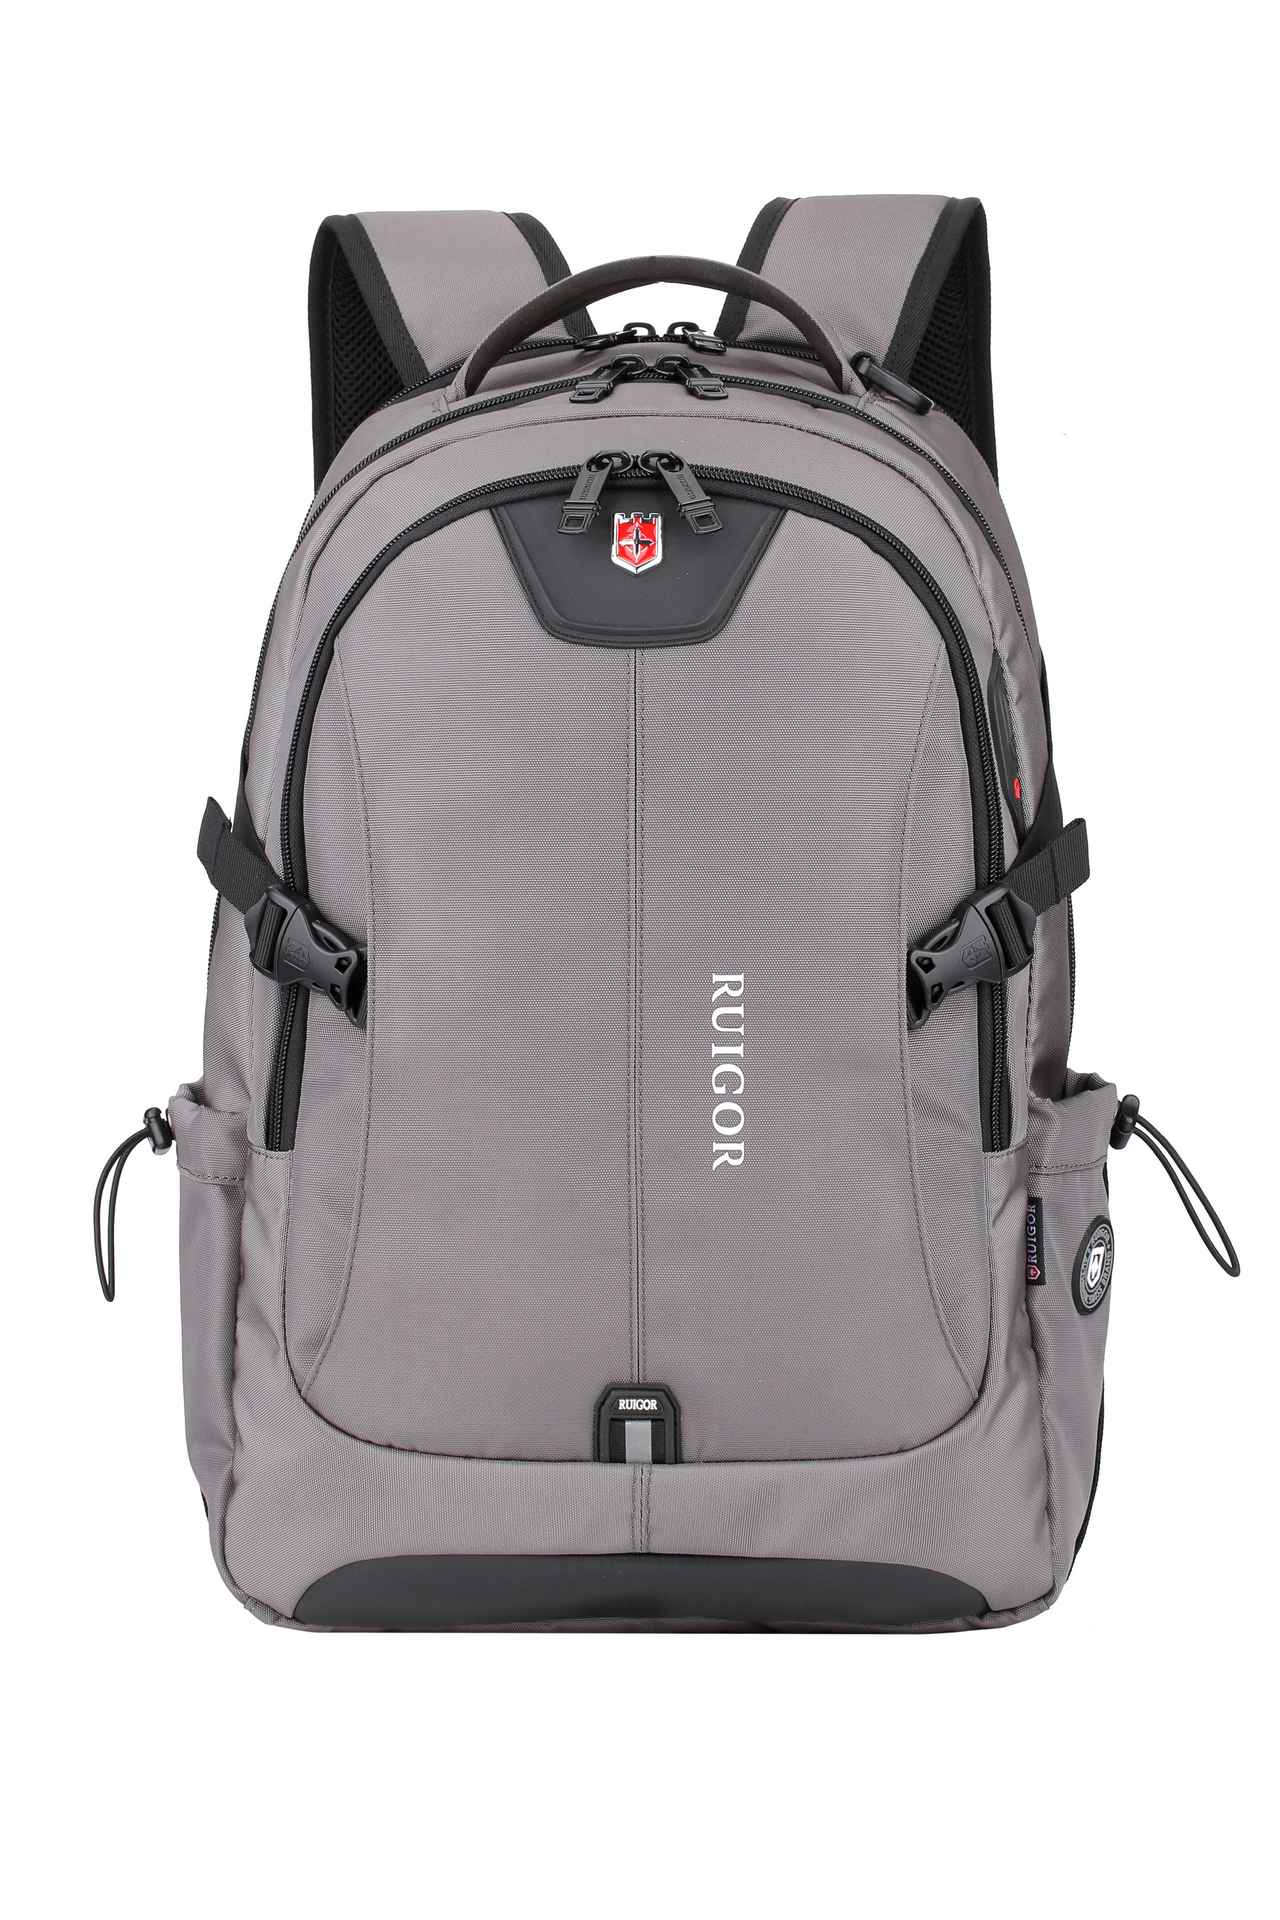 RUIGOR ICON 47 Laptop Backpack Grey - Swiss Ruigor